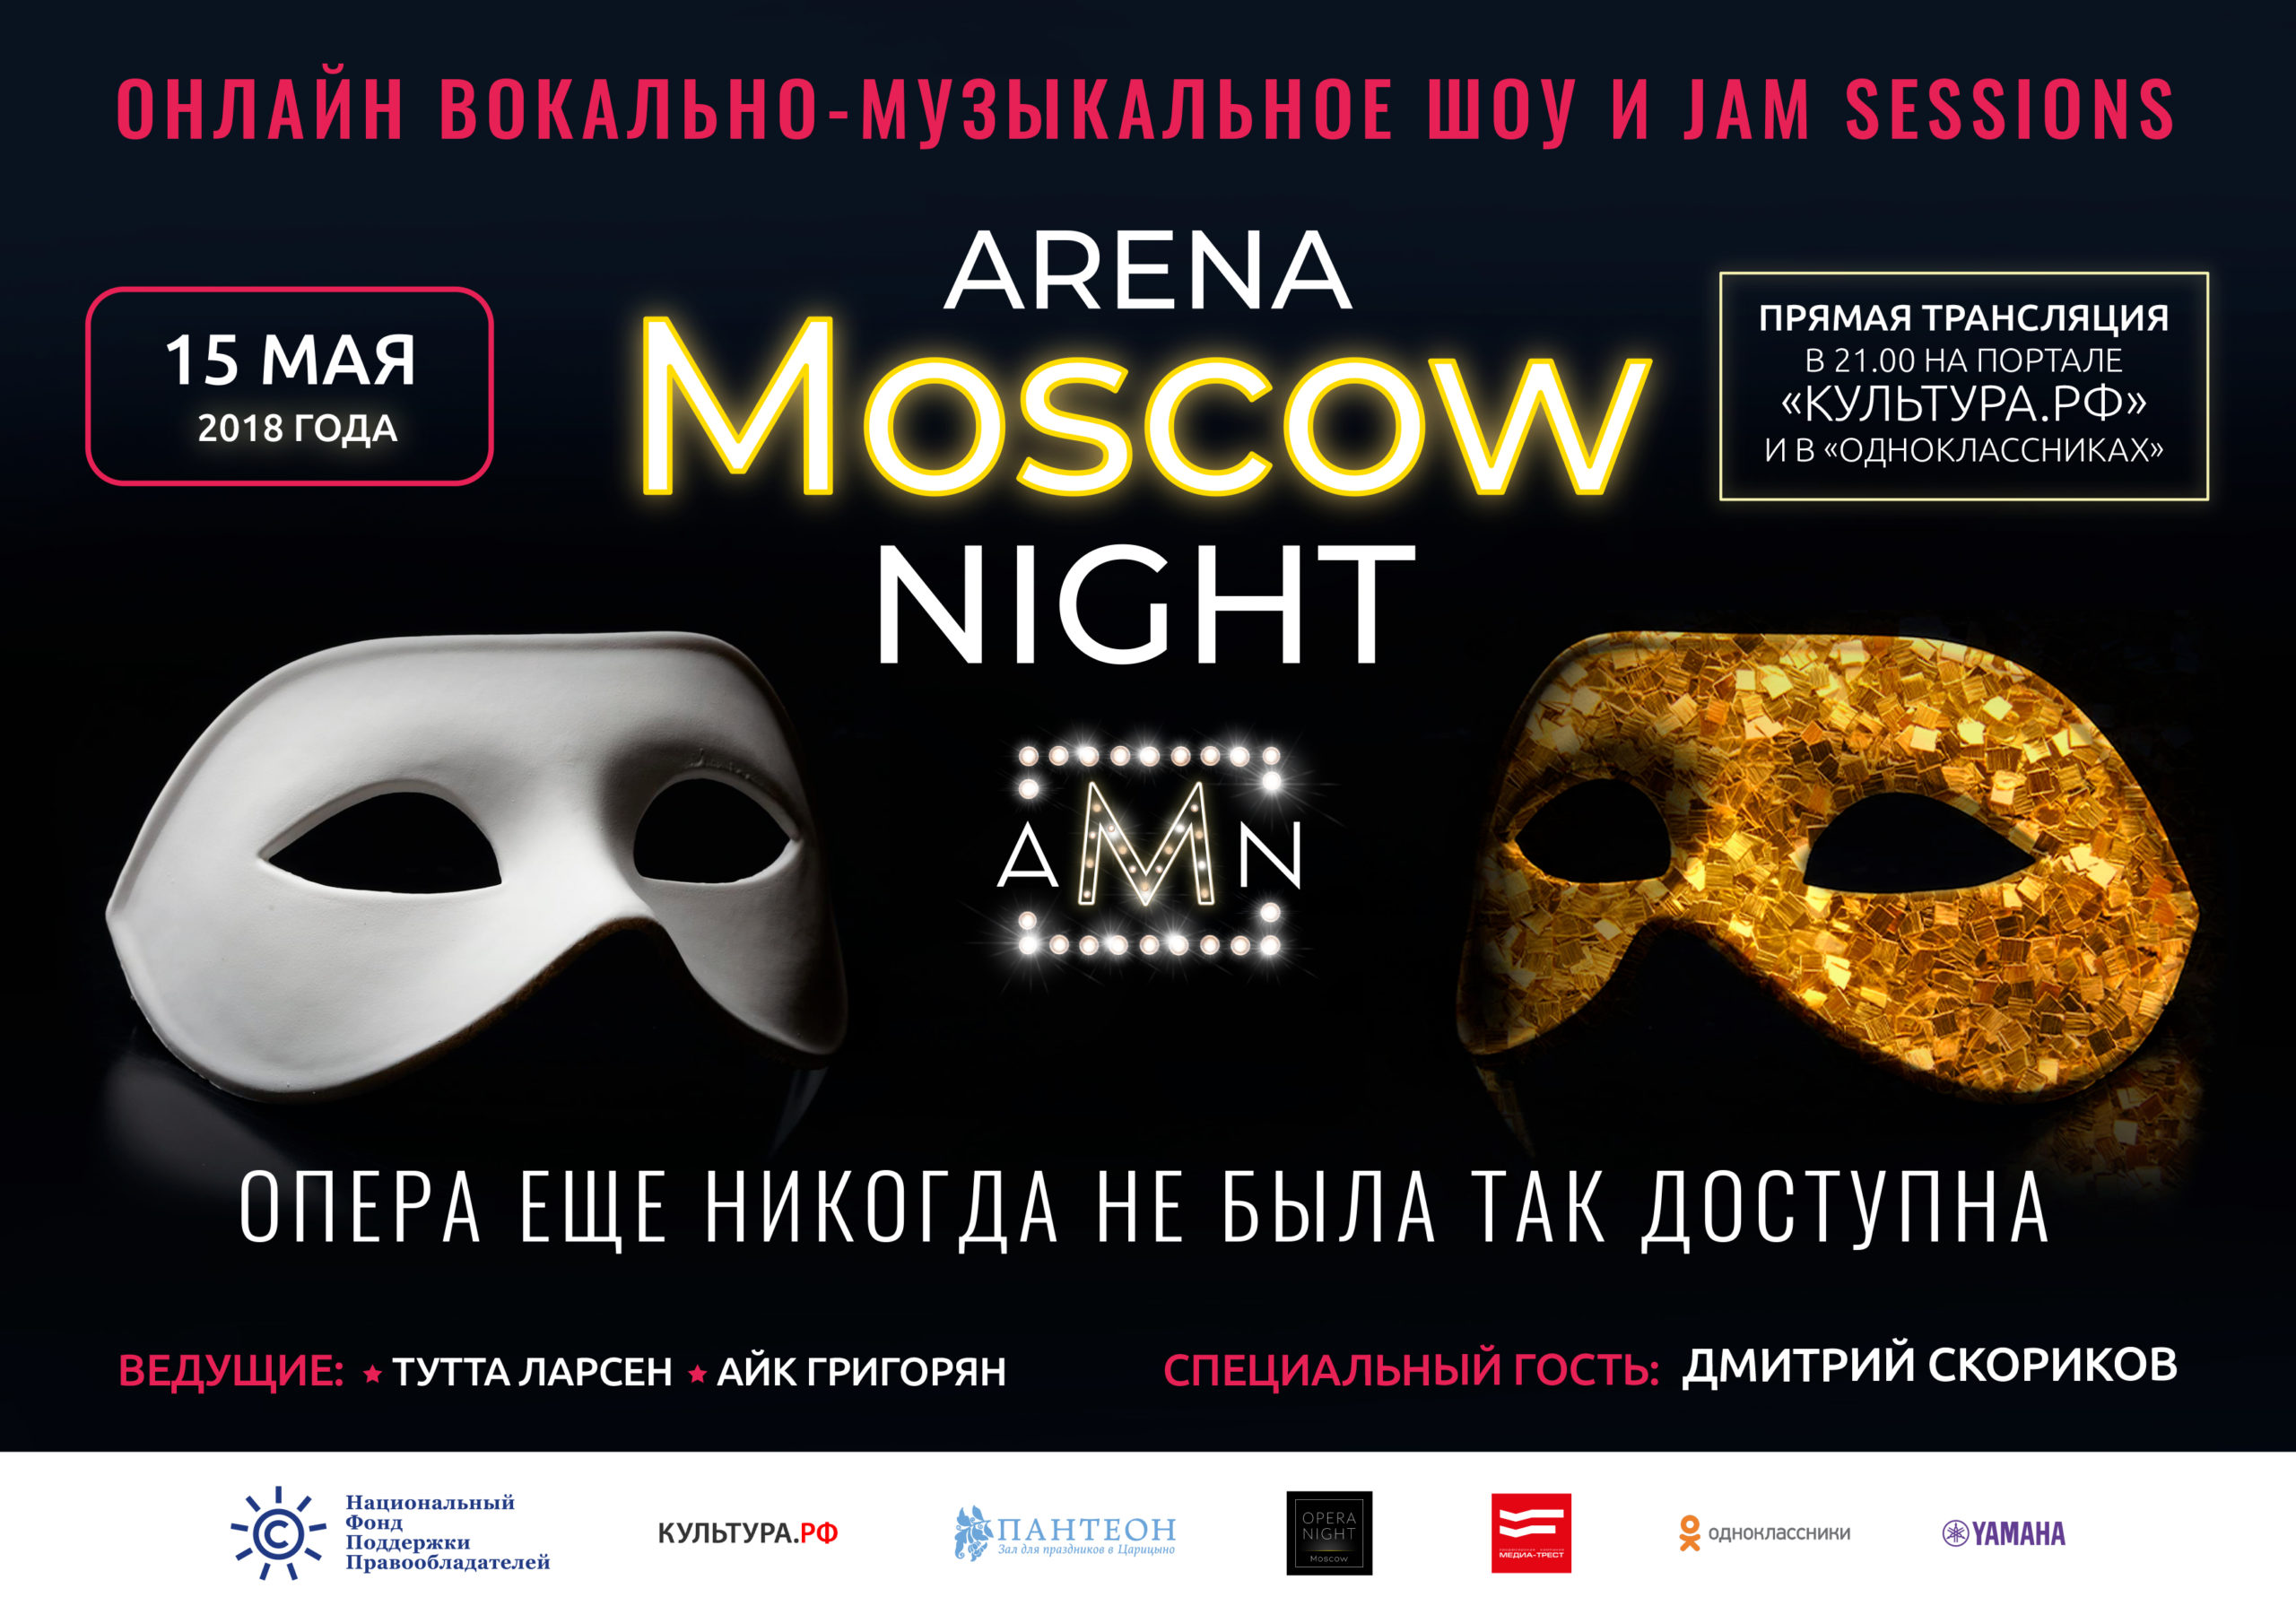 Виртуальная опера: смотрите онлайн третий этап проекта Arena Moscow Night